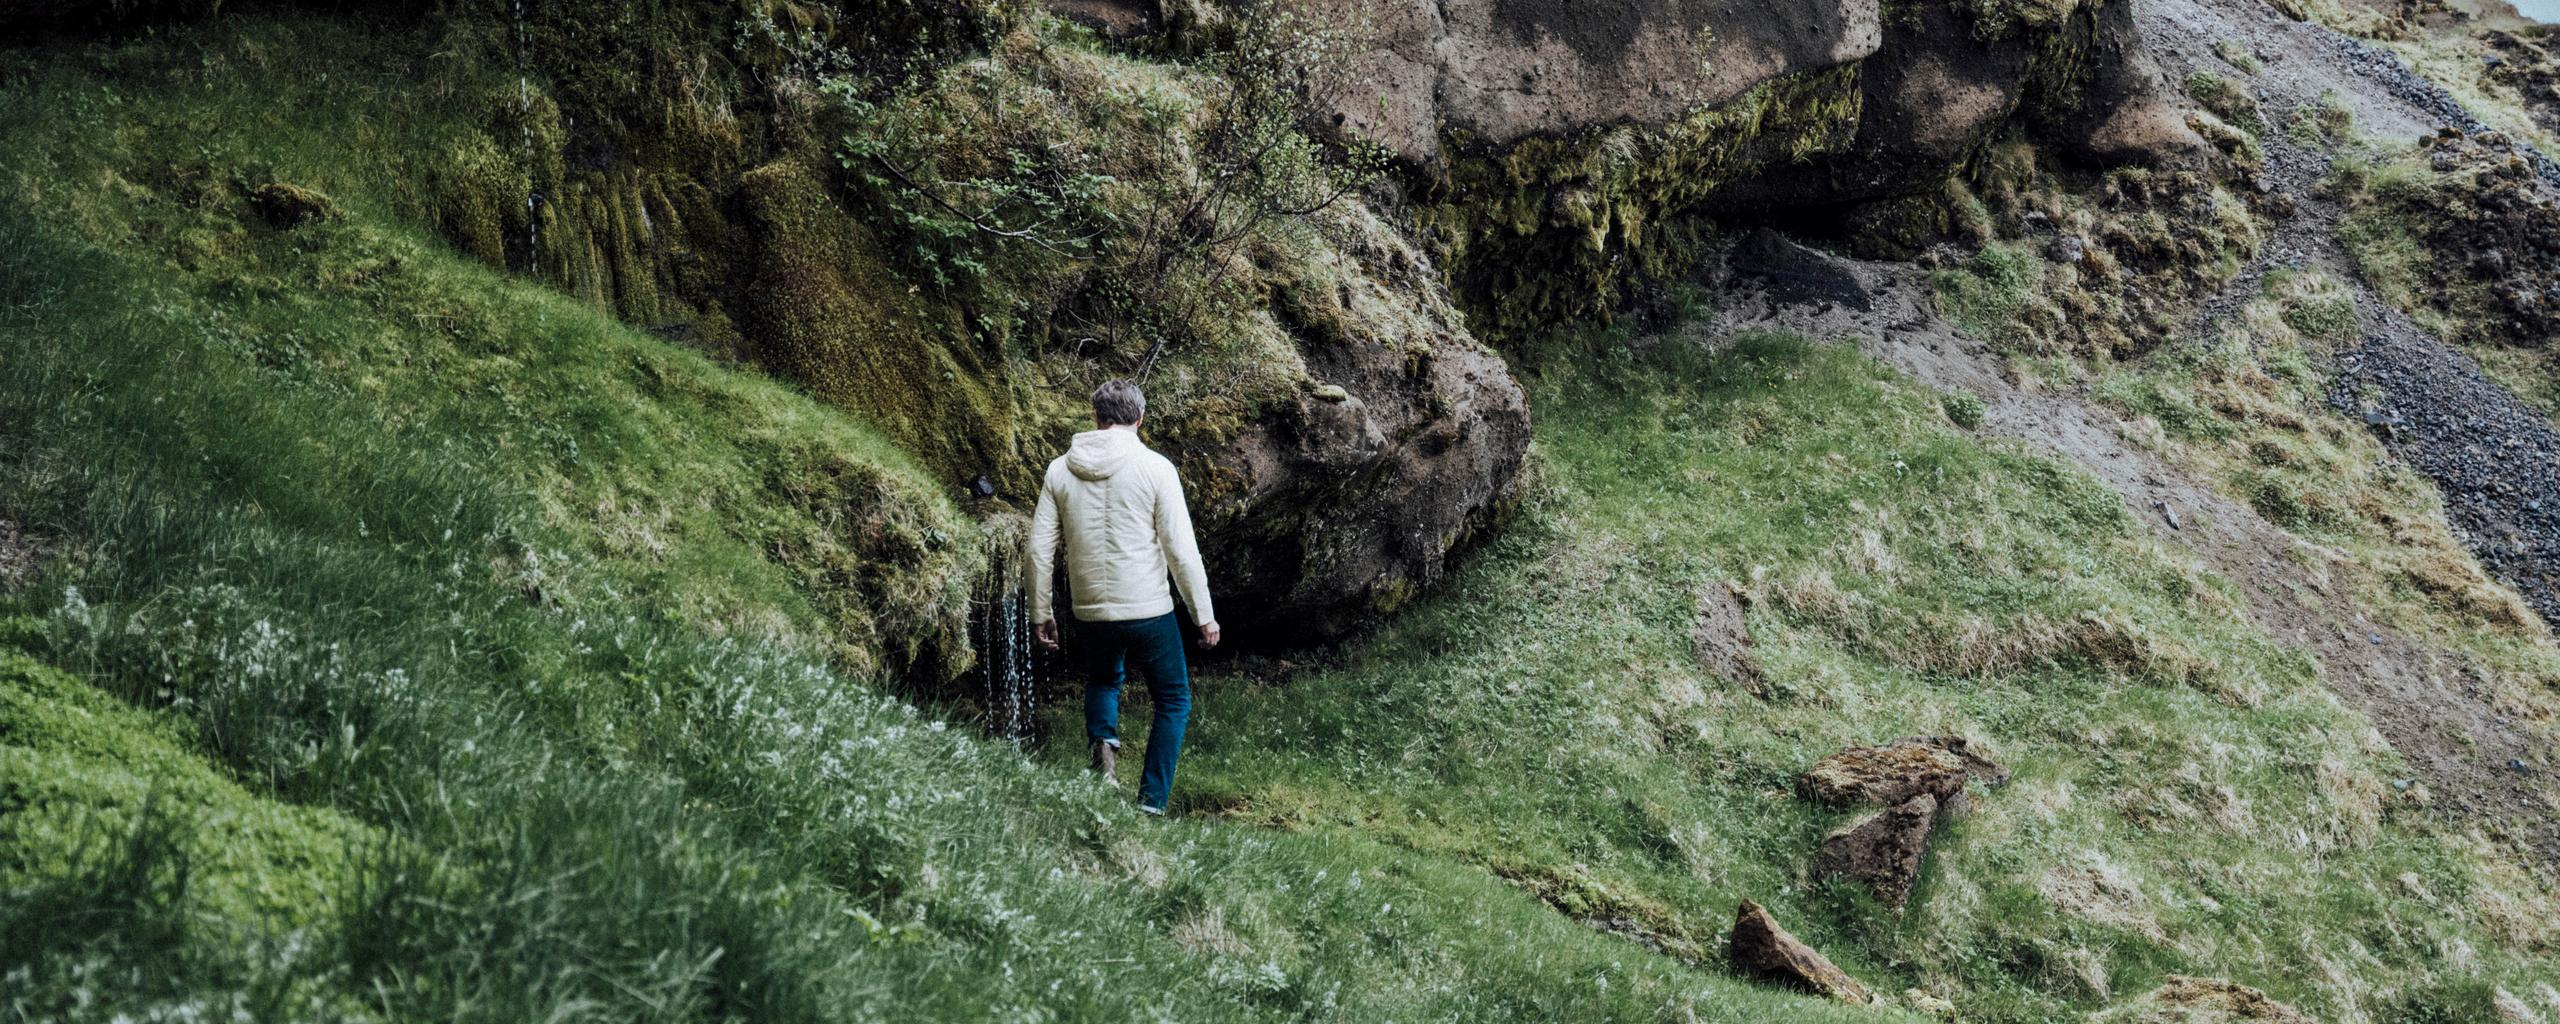 Man walking down green hillside in Iceland